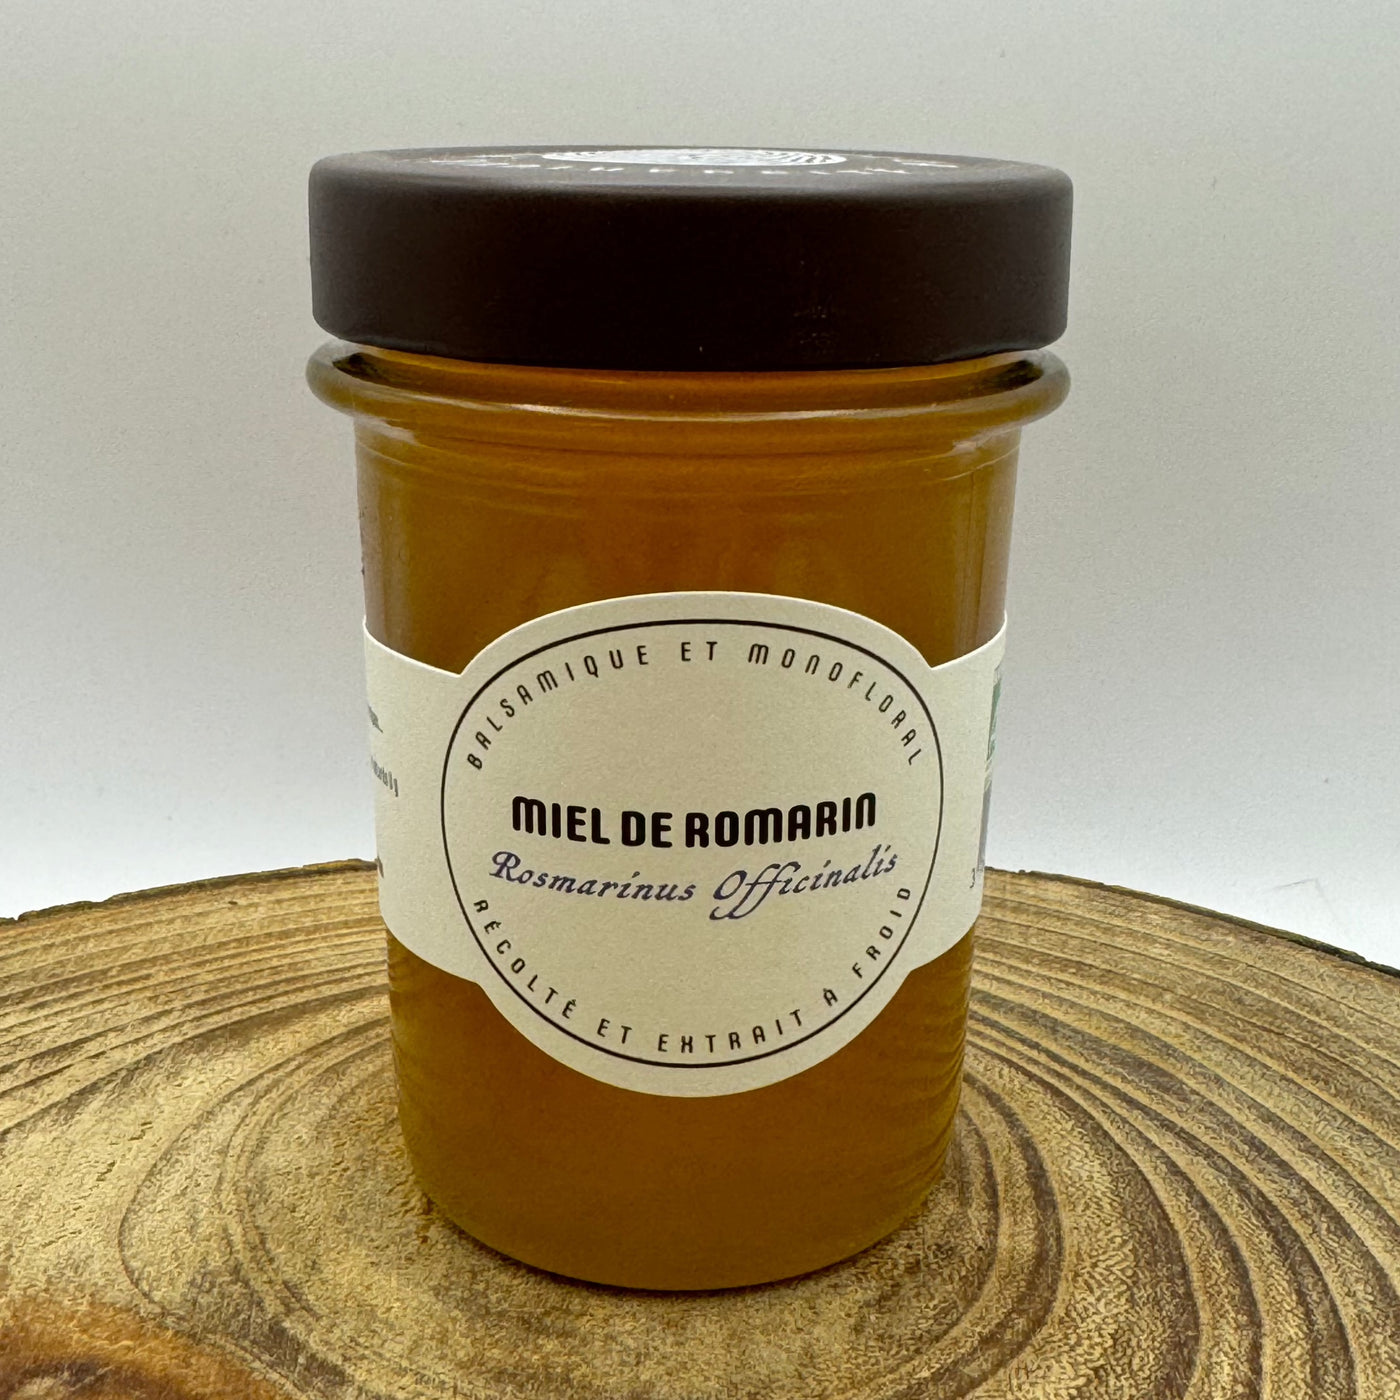 Les miels monofloraux d'Umile AB